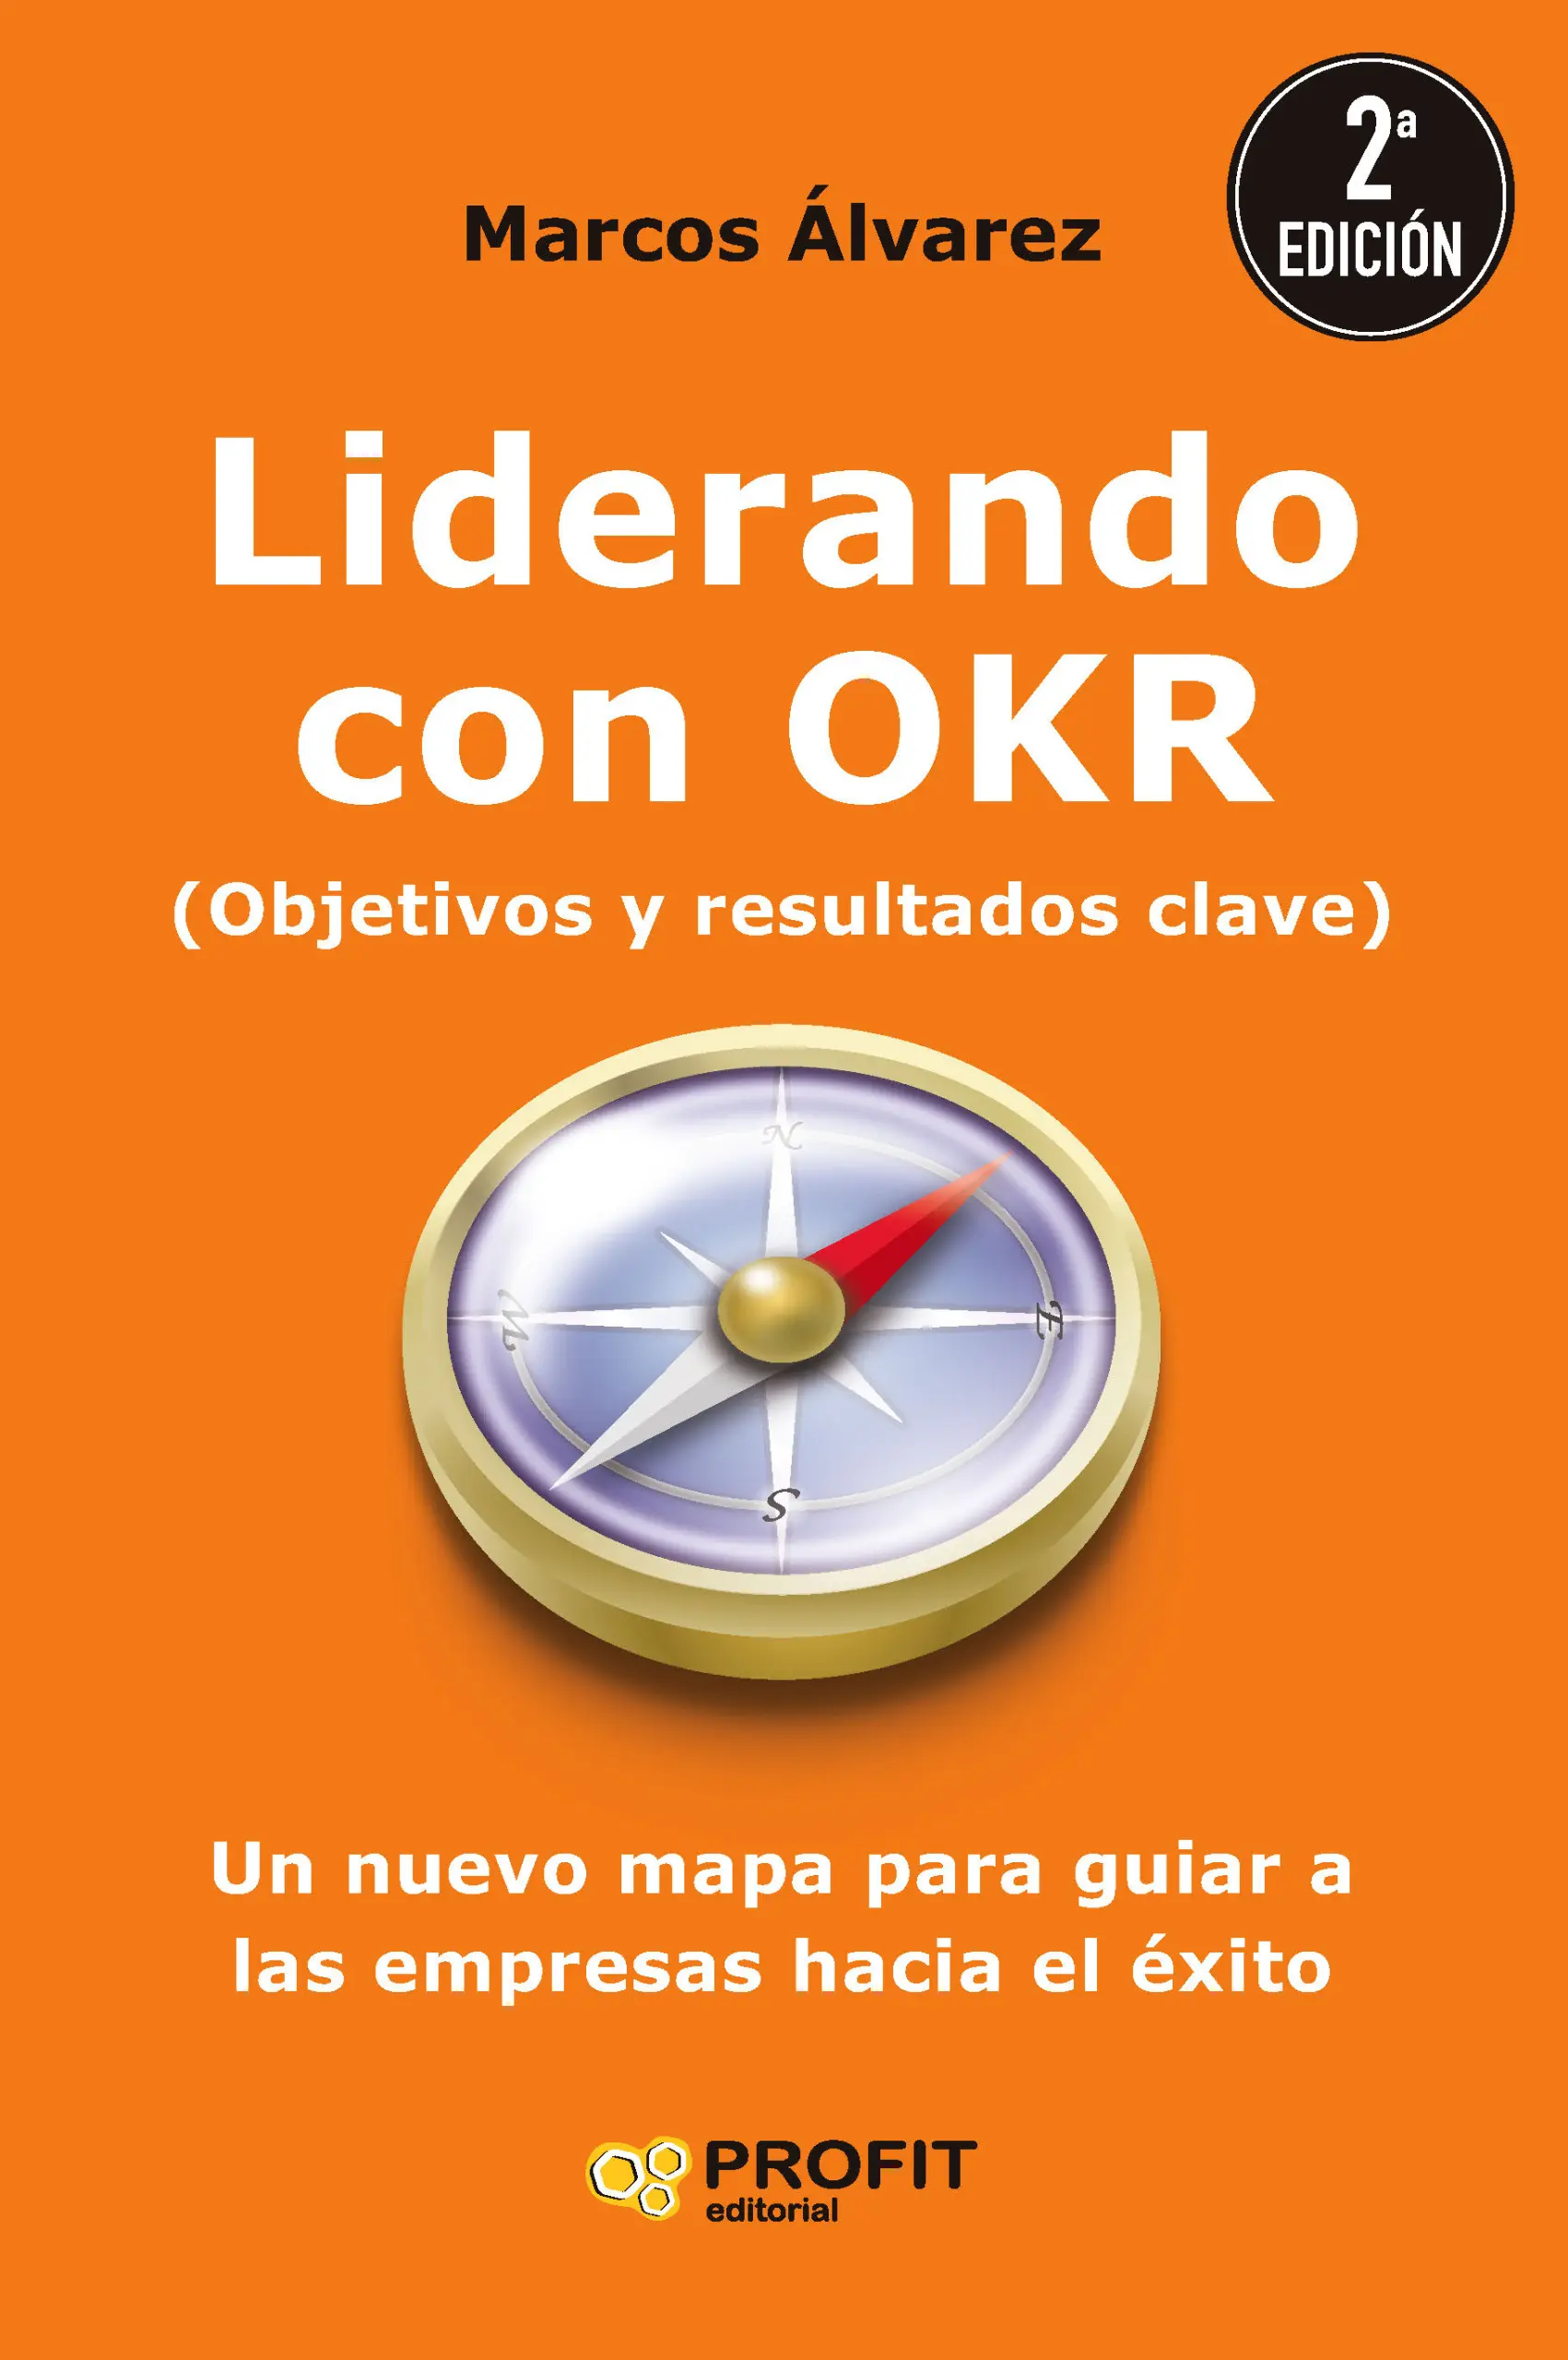 Liderando con OKR | Marcos Álvarez | Libros para vivir mejor